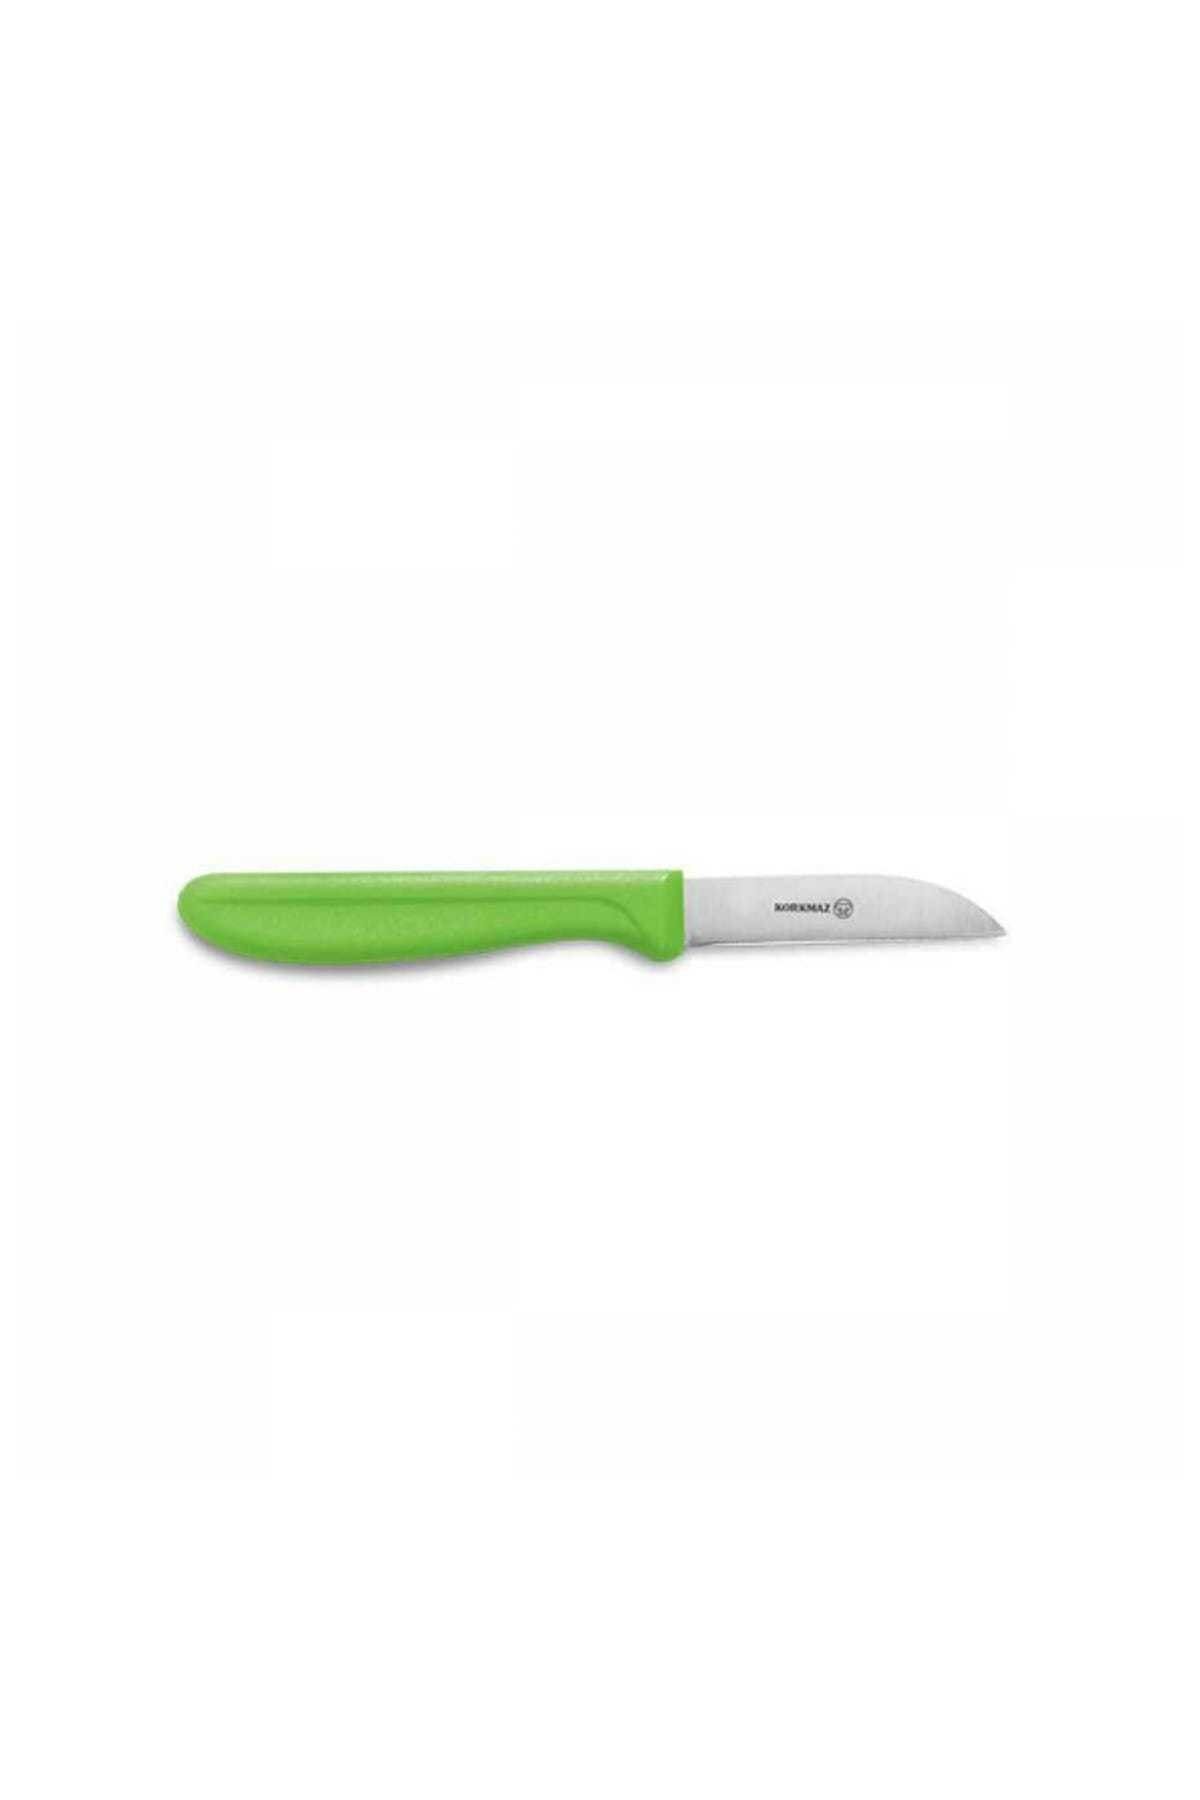 Korkmaz A553-01 Frutta 6'lı Yeşil Meyve Bıçak Seti